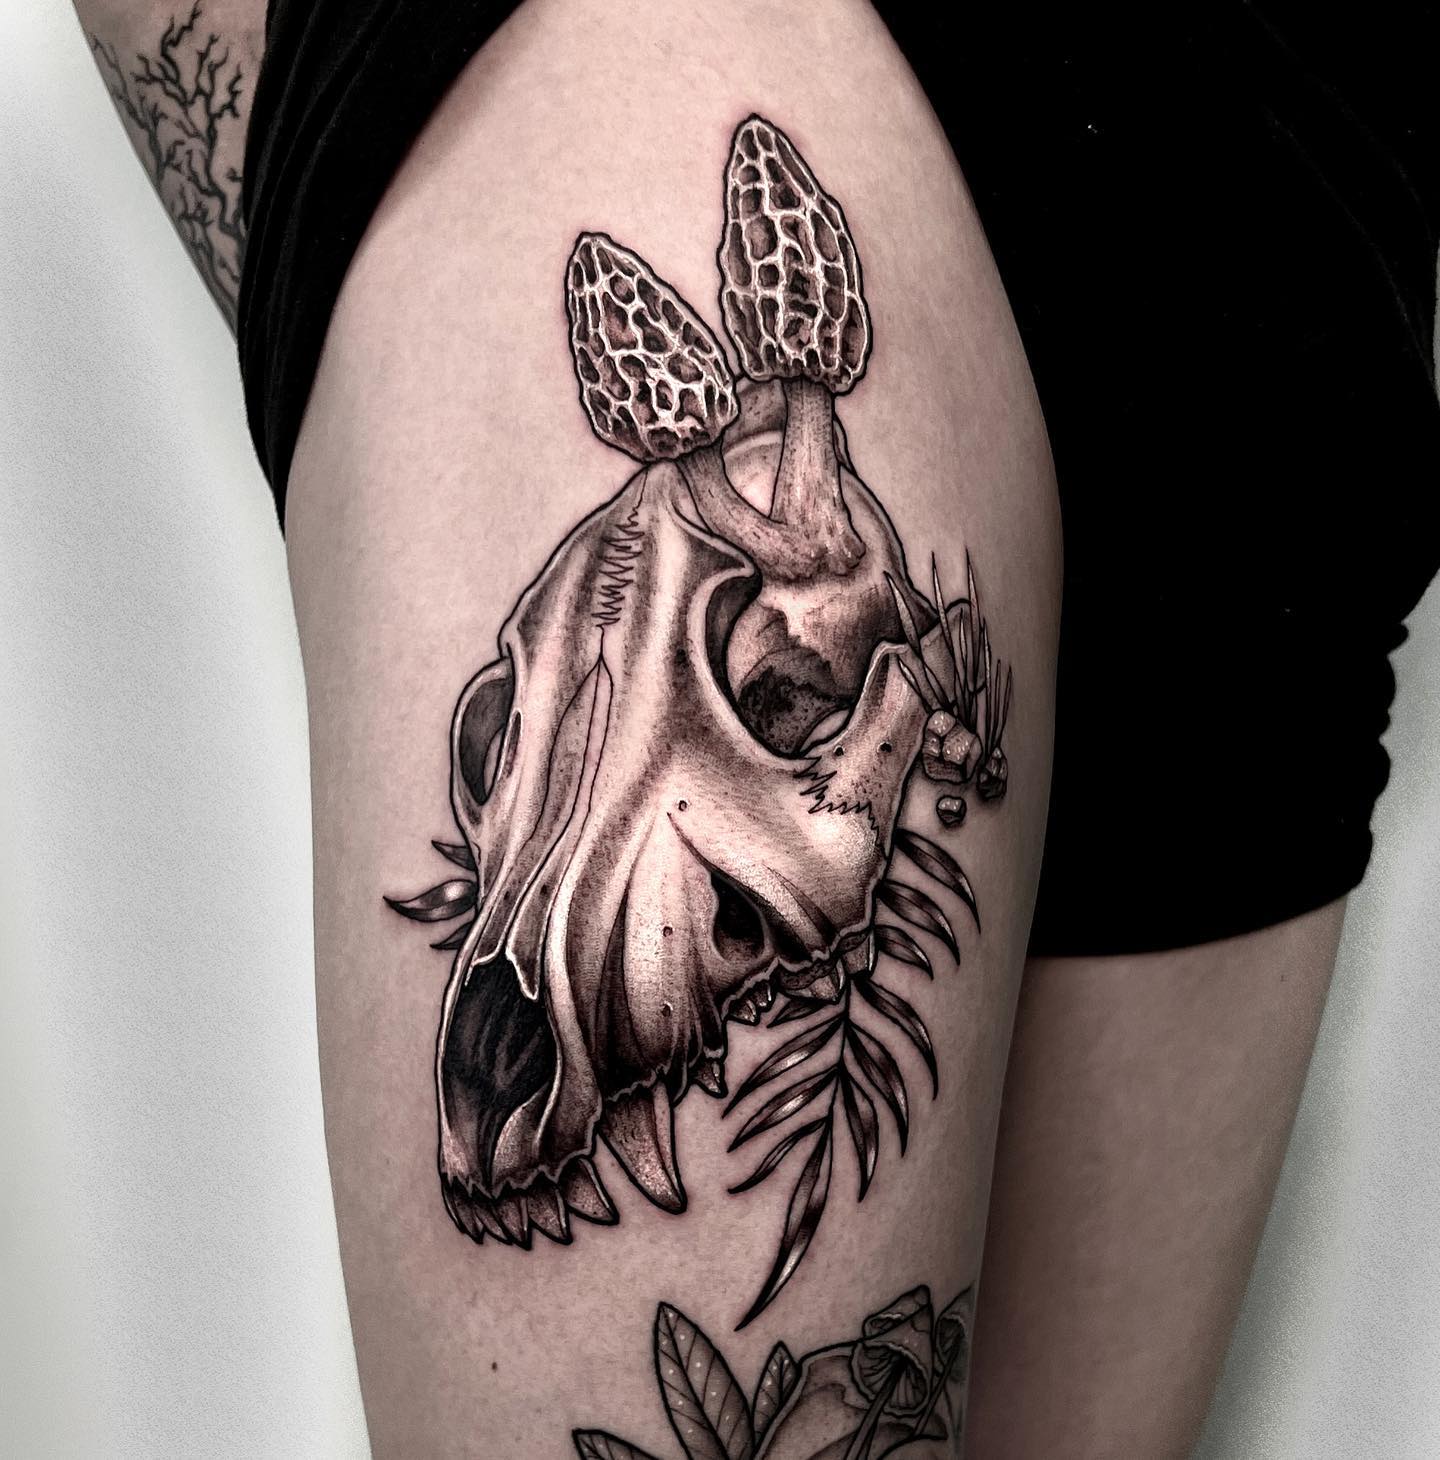 Wilczy tatuaż z czaszką i grzybami